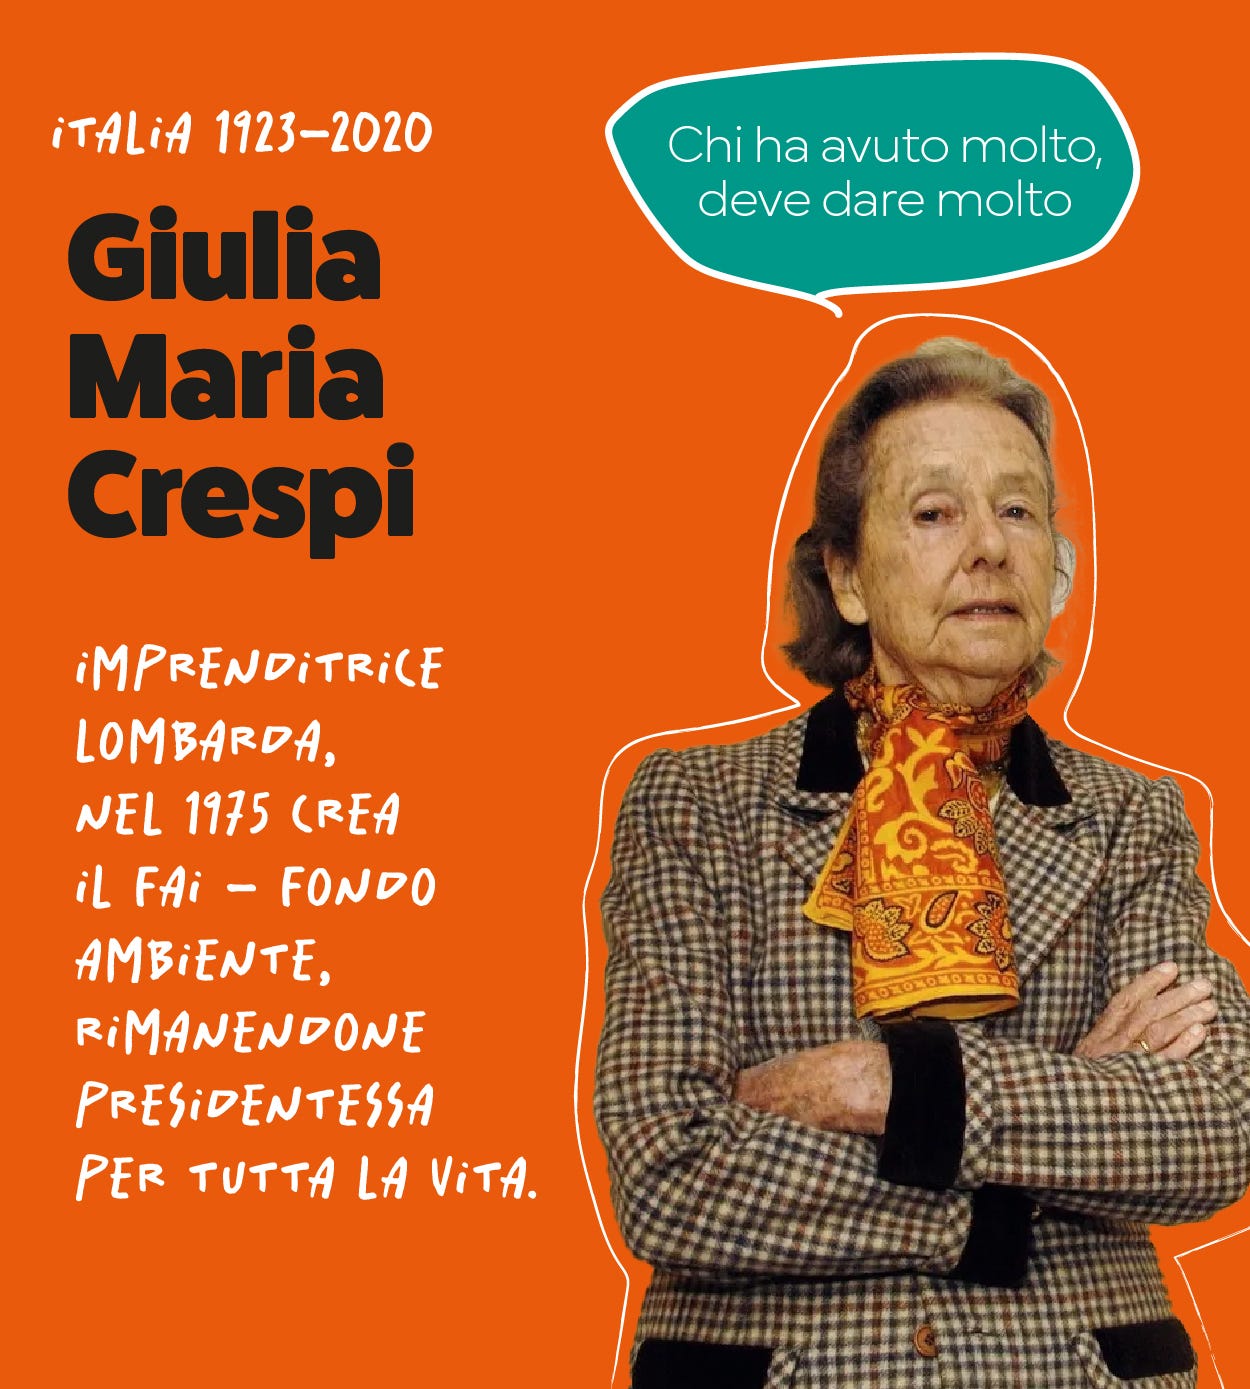 Giulia Maria Crespi. imprenditrice  lombarda, nel 1975 crea il fai - fondo  ambiente,  rimanendone  presidentessa per tutta la vita.